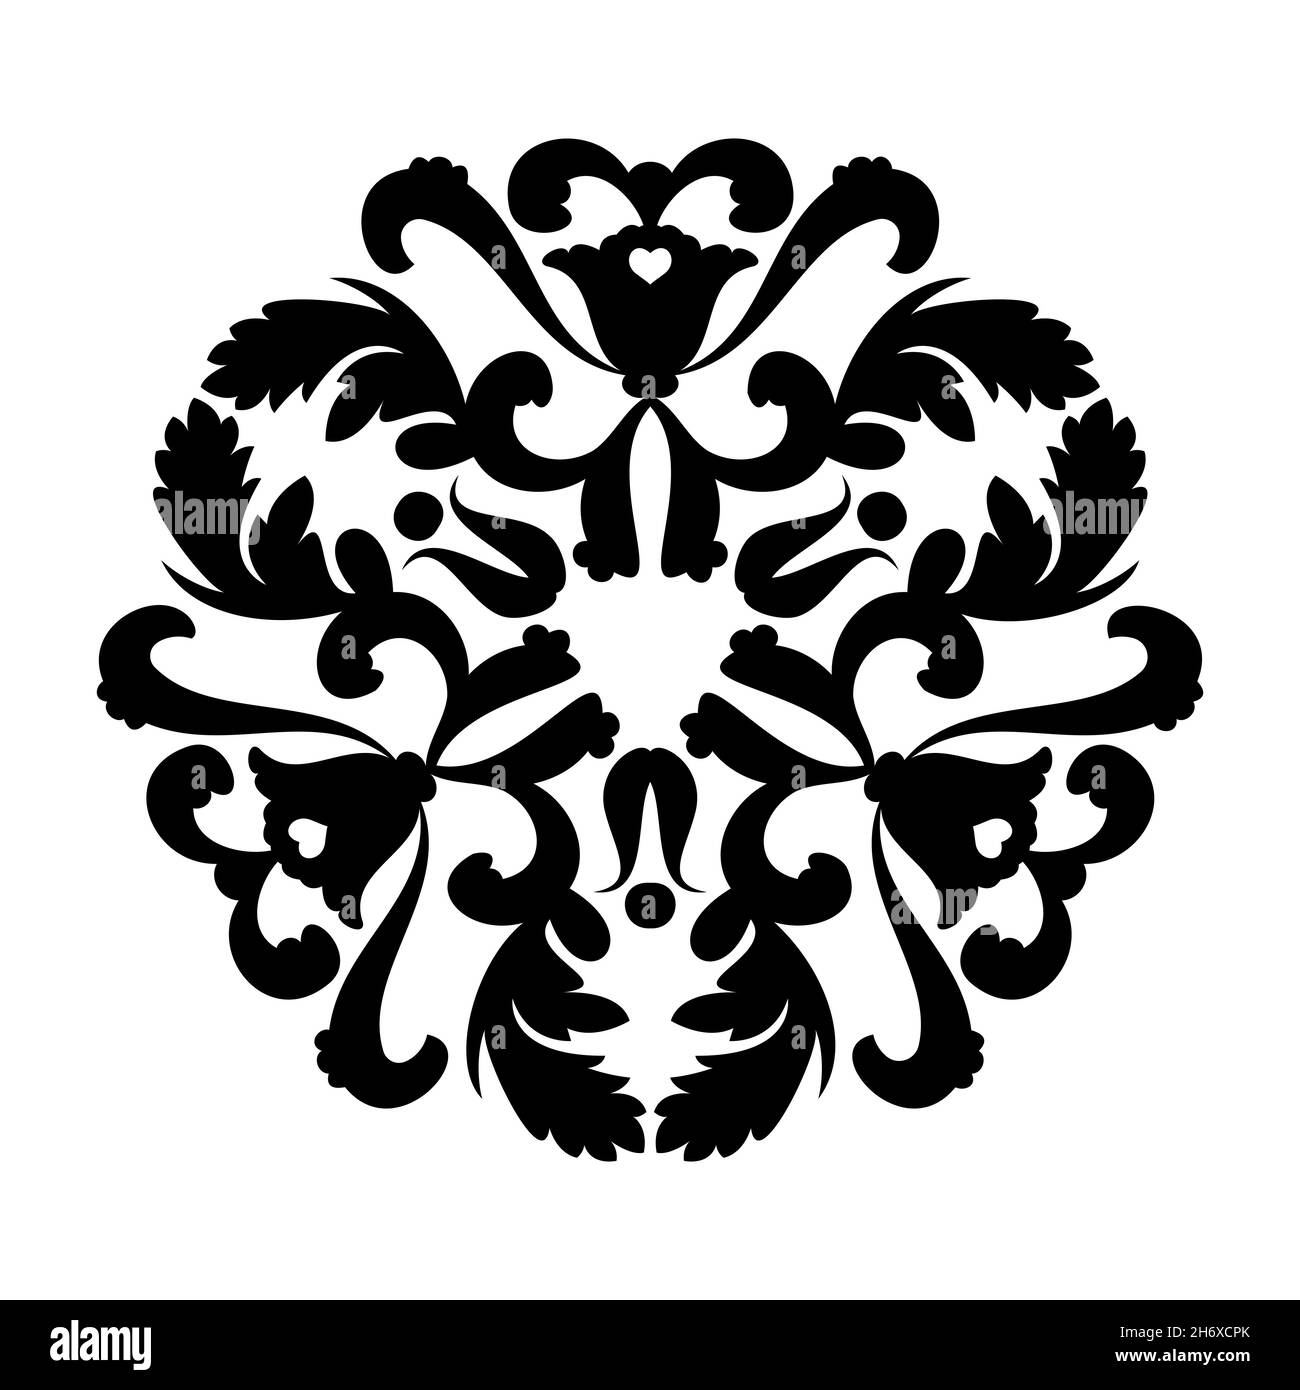 Décoration de mandala circulaire vectorielle en noir sur fond blanc.Pour la découpe et les tirages au laser stencil Tattoo Marquetry. Illustration de Vecteur